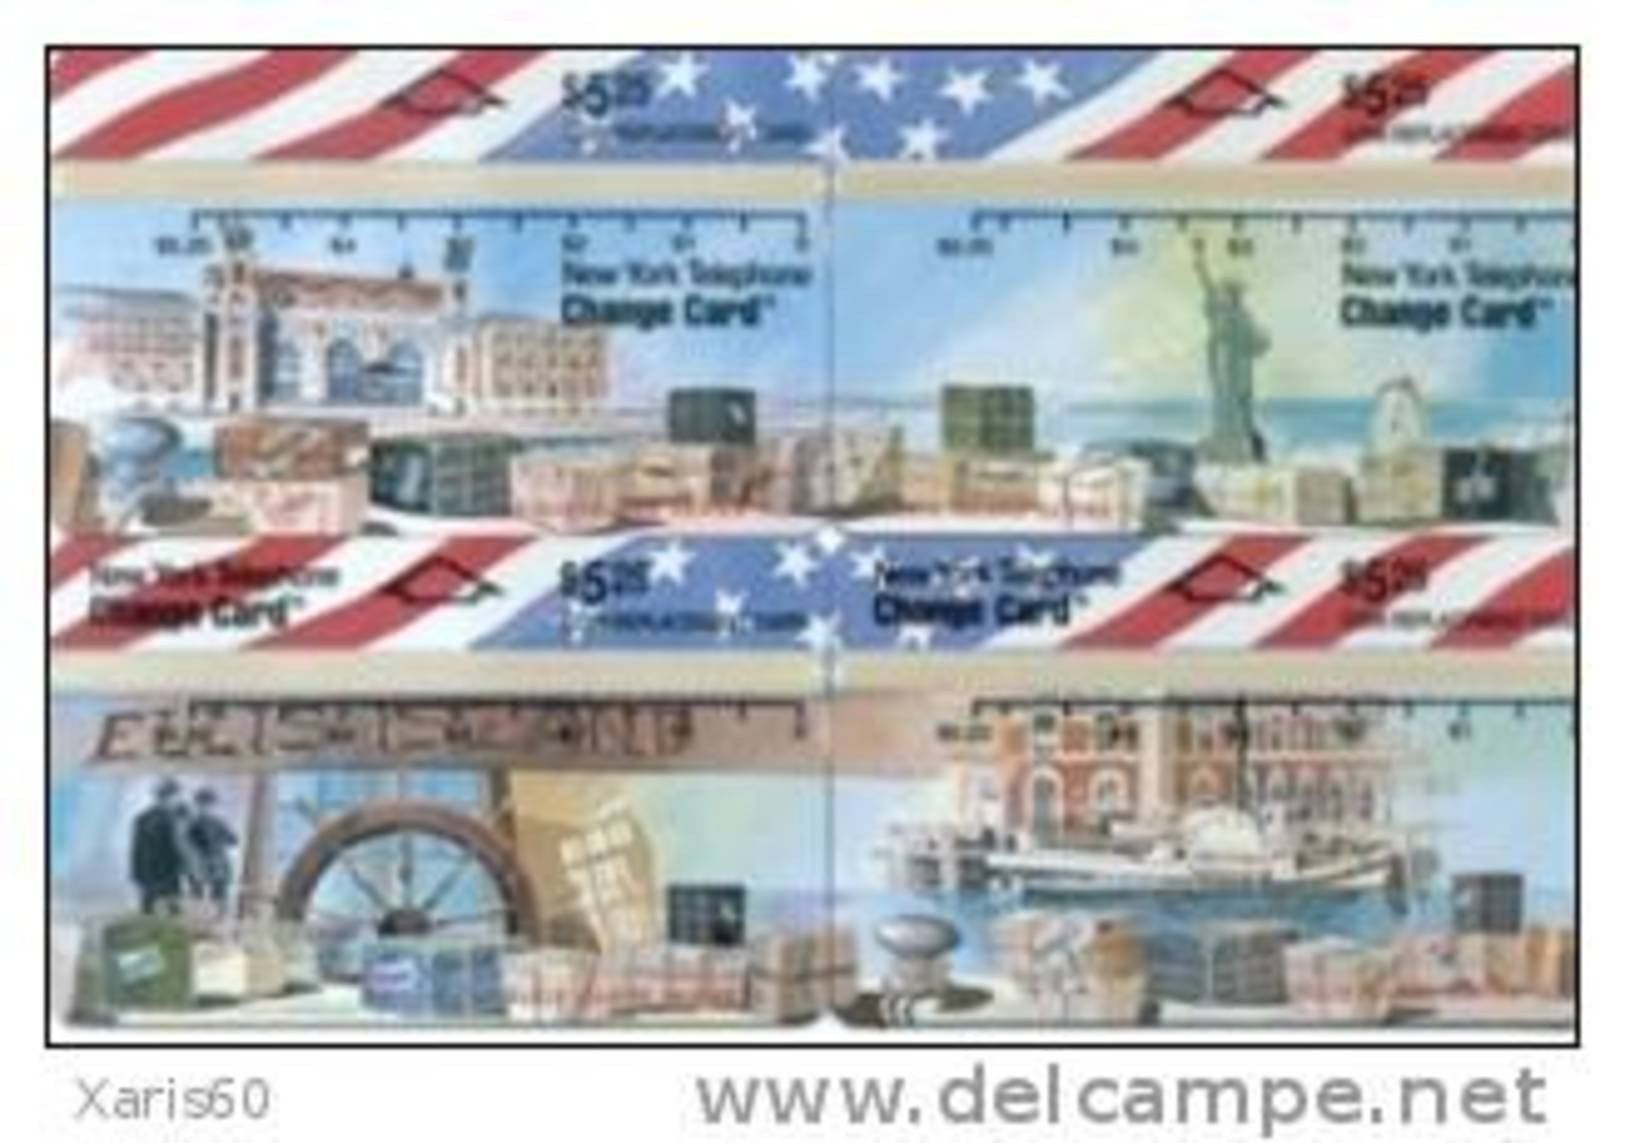 USA-NL-07,08,09,10 Ellis Island Series. Puzzle - [1] Tarjetas Holográficas (Landis & Gyr)